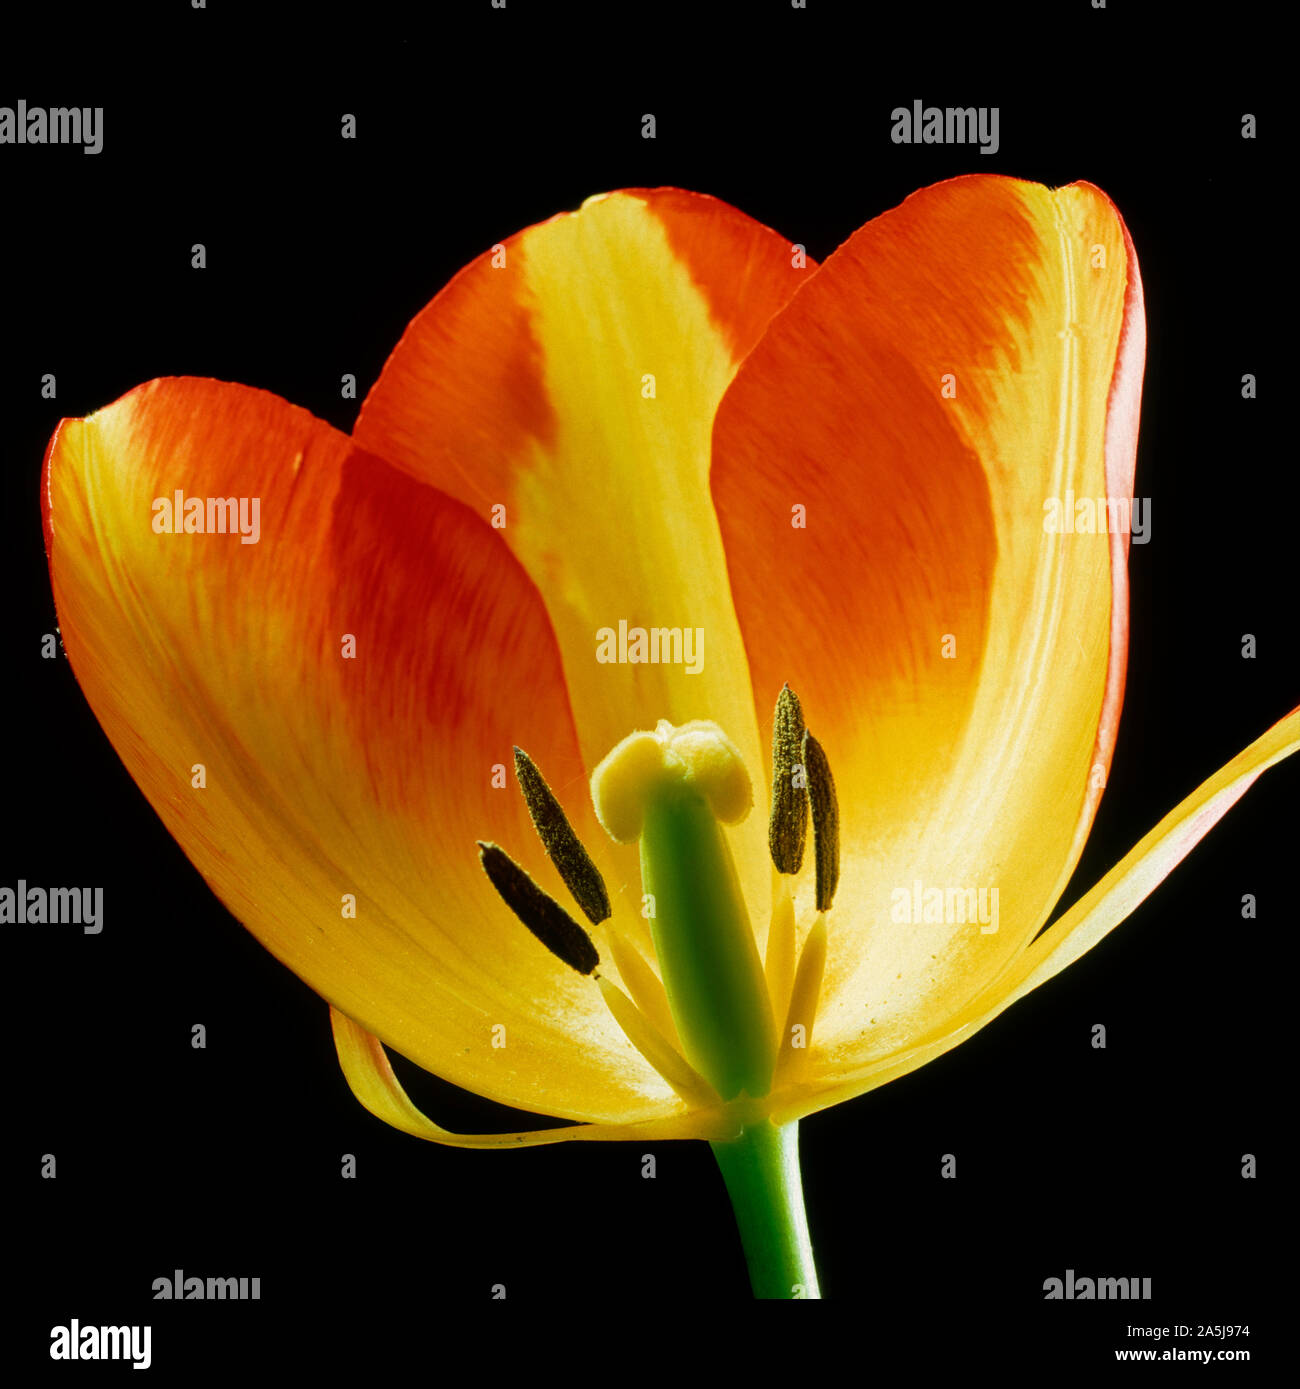 Una sezione di un tulipano fiore che mostra la sua struttura, rosso arancio tepals, antere, stami, stile, lo stigma e delle ovaie Foto Stock